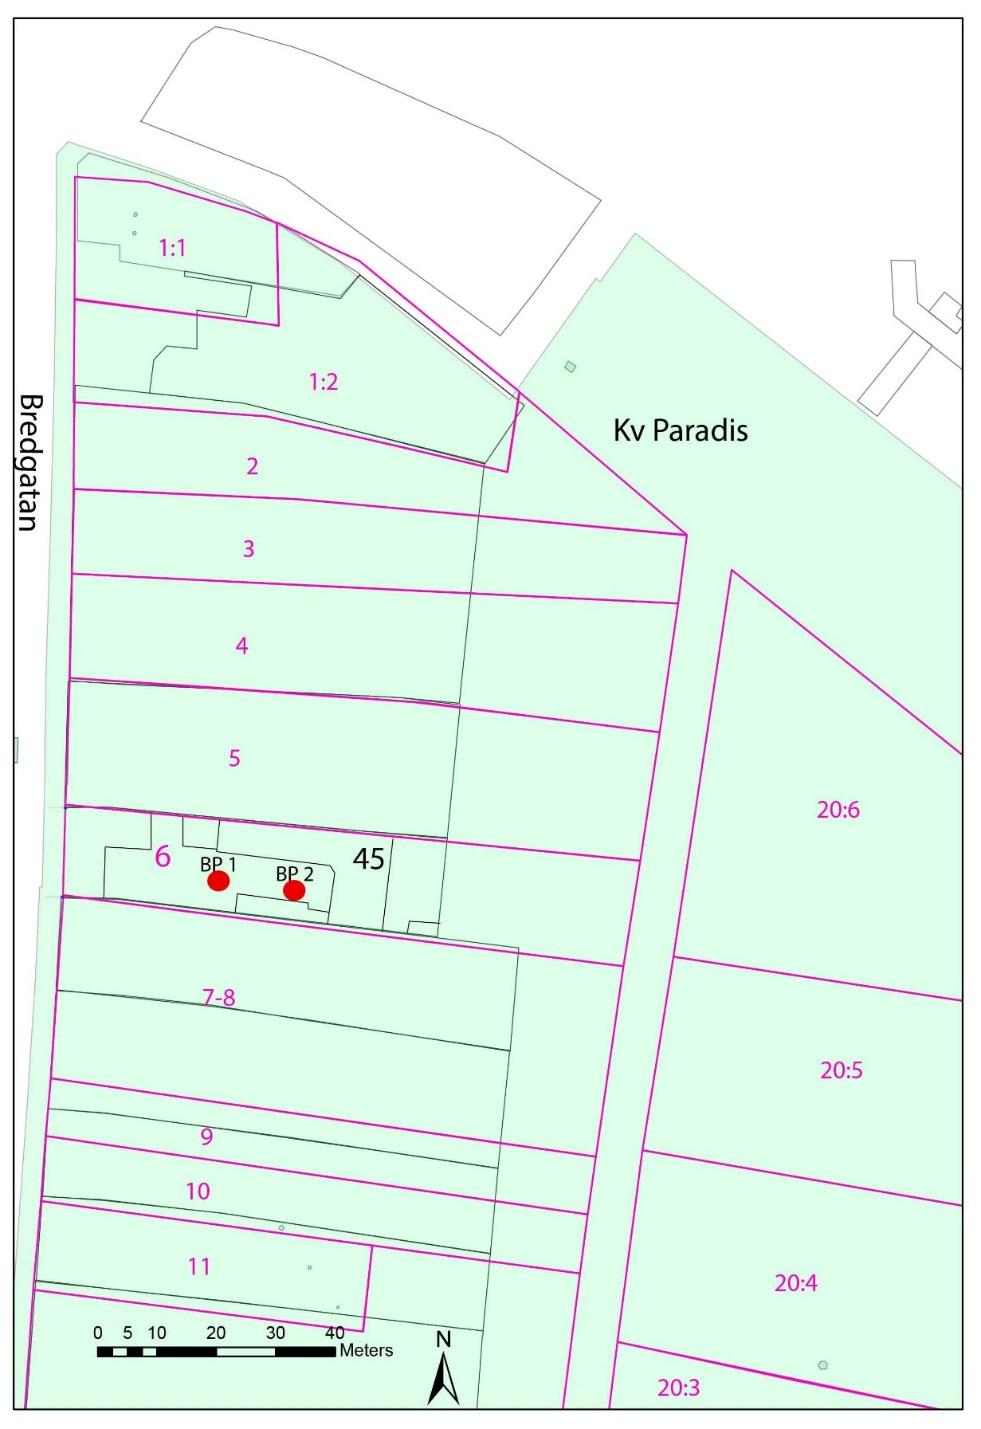 Figur 2. Den nordvästra delen av kv Paradis, med dagens fastighetskarta markerad med grönt, Andréns tomtrekonstruktion markerad med rosa linjer, samt de två borrproverna markerade med rött.